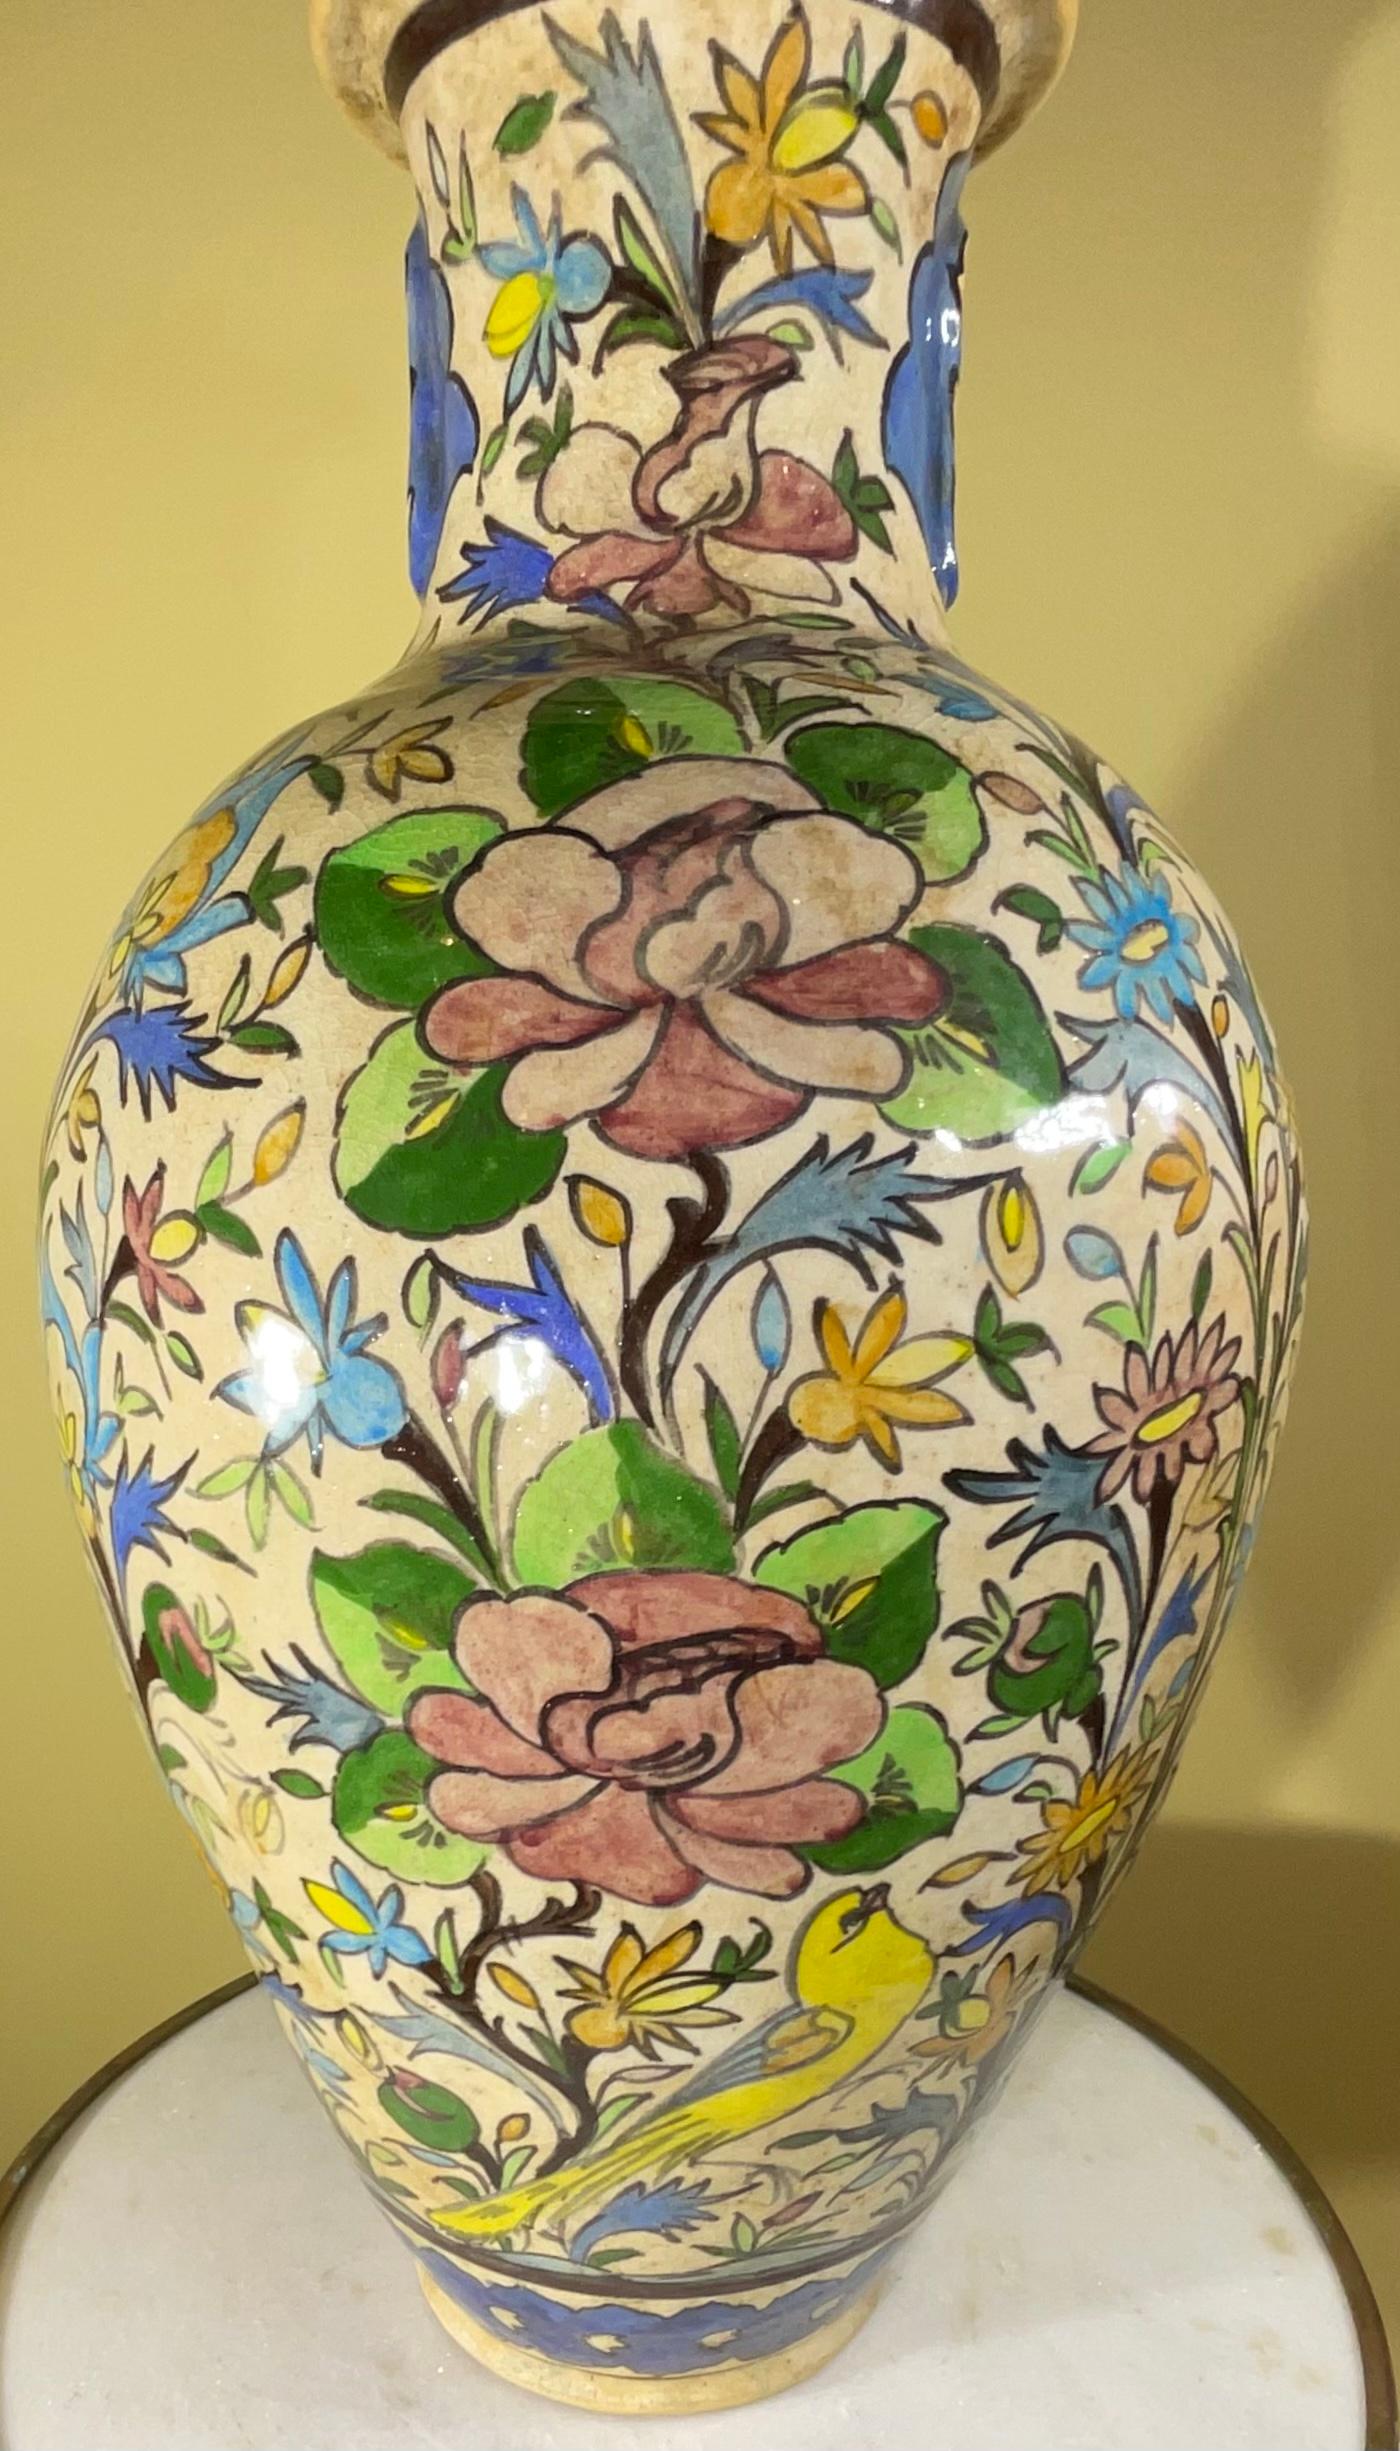 Schöne Vase aus persischer Keramik, handbemalt und glasiert mit bunten Motiven von Vögeln, Bäumen, Blumen und Ranken auf cremefarbenem Hintergrund.
 Großartiges Kunstobjekt zum Ausstellen.